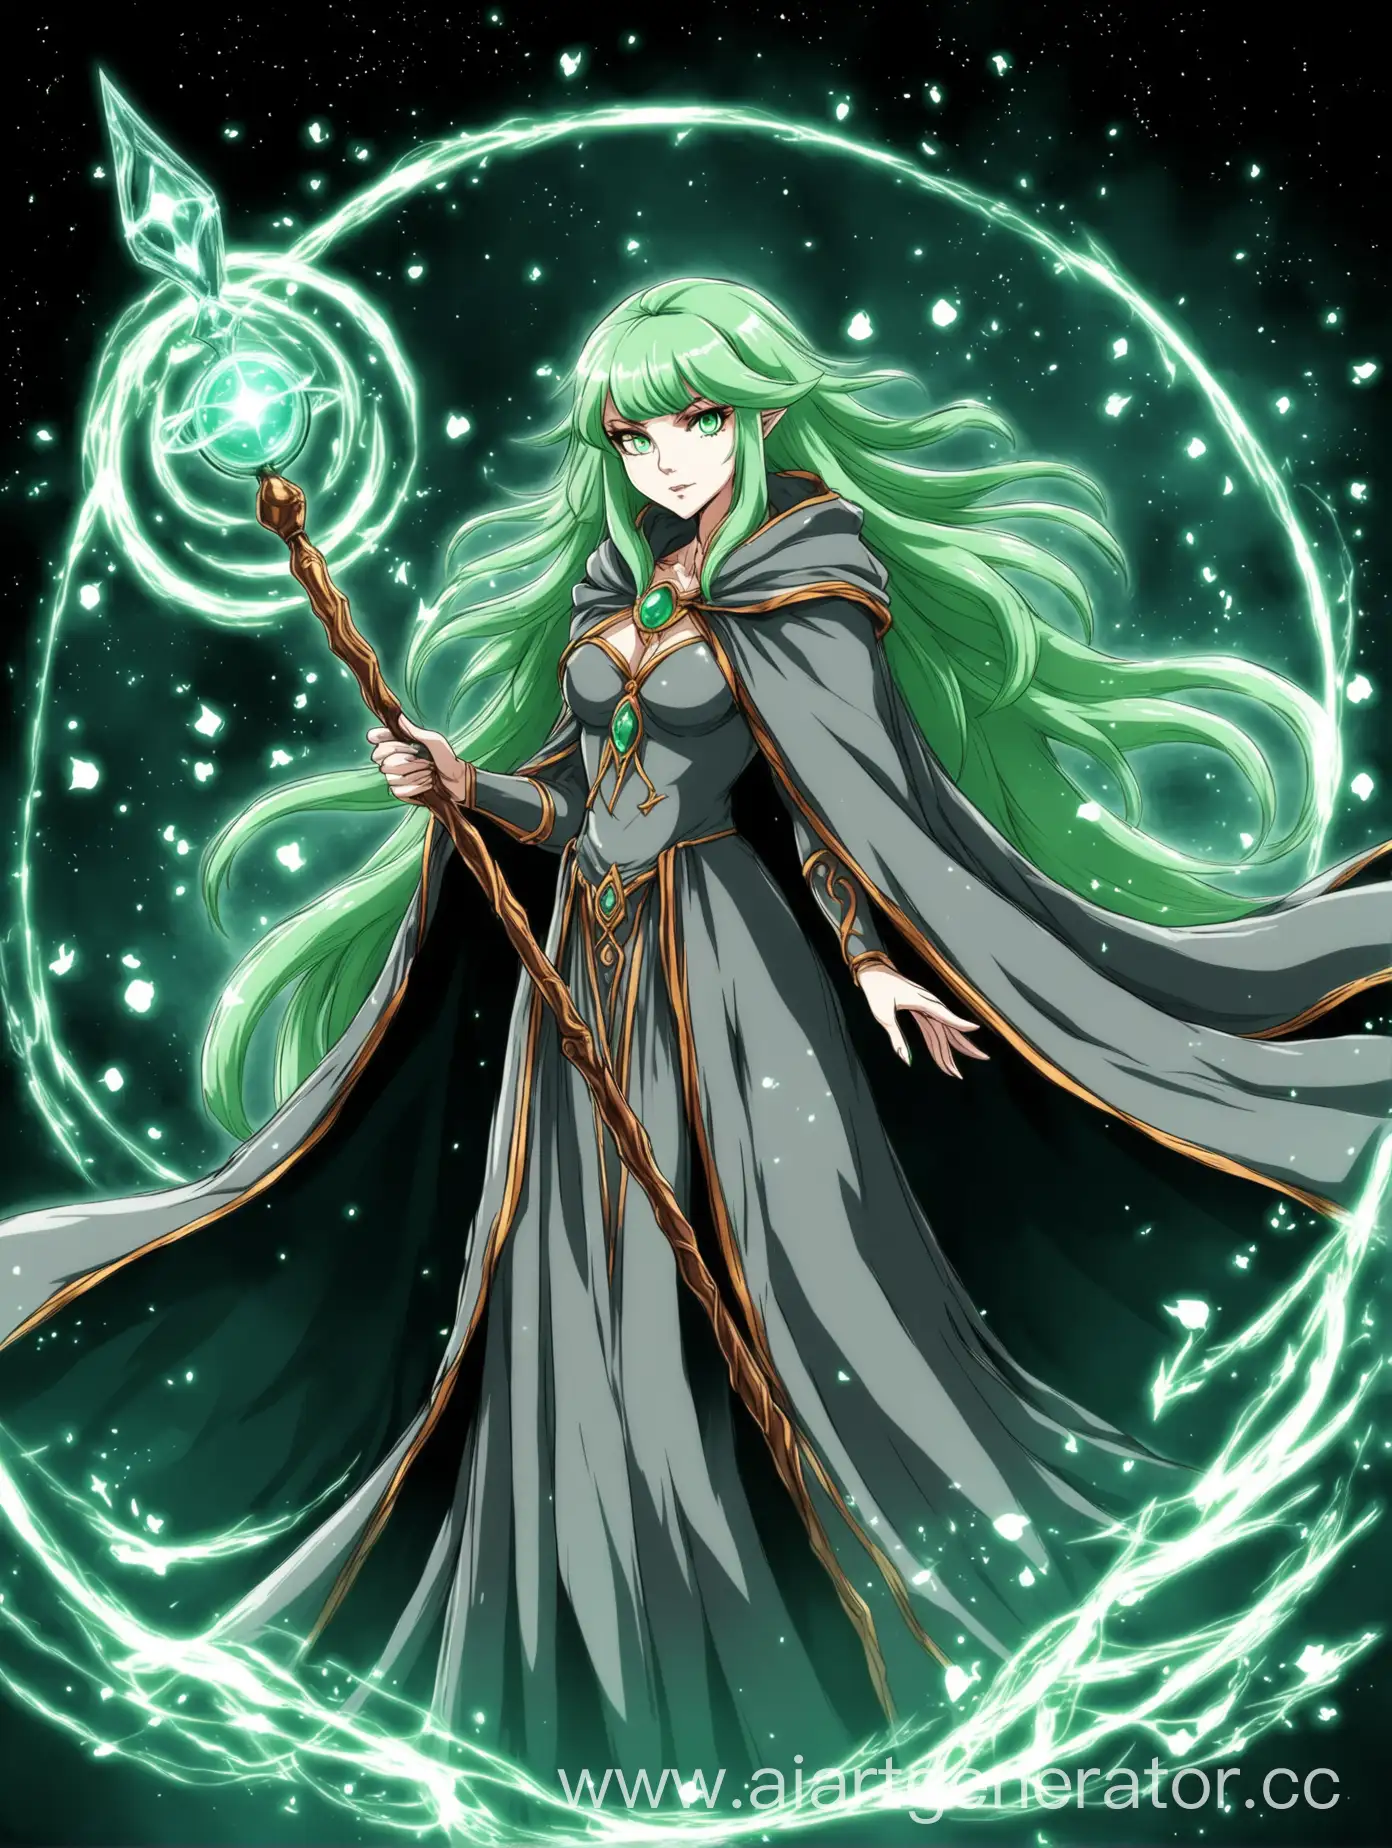 Чародейка с светло-зеленными волосами и серым плащем и с магическим боевым посохом. В аниме стиле